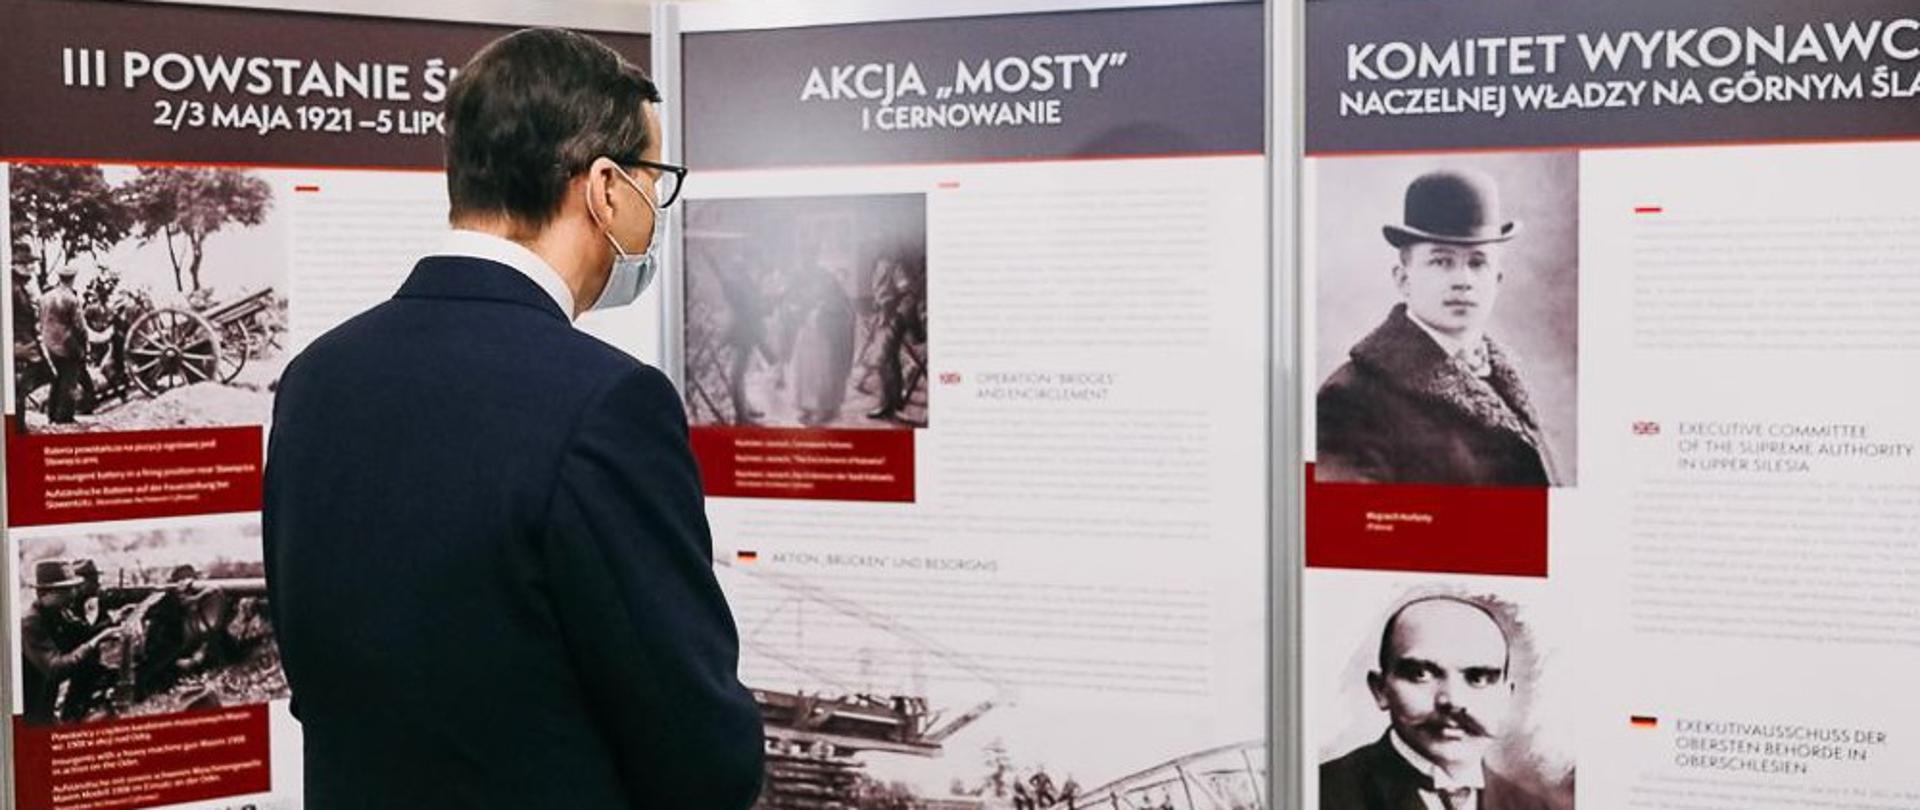 Premier Mateusz Morawiecki ogląda wystawę.